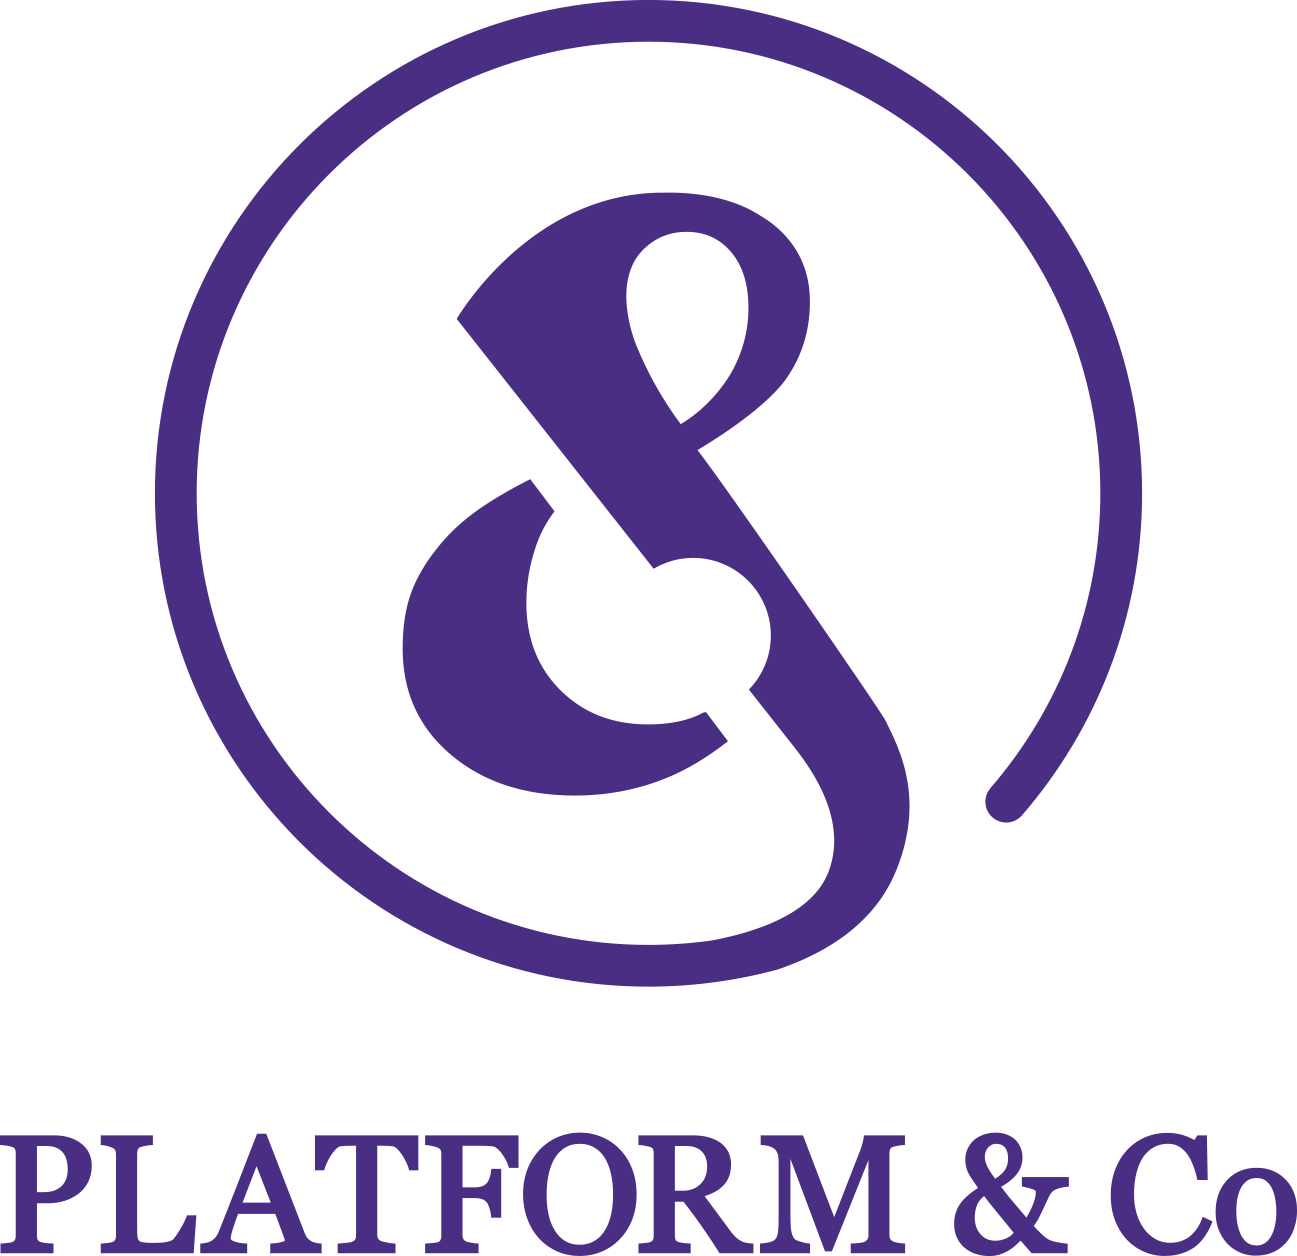 Platform&Co Pte Ltd 在 Meet.jobs 徵才中！